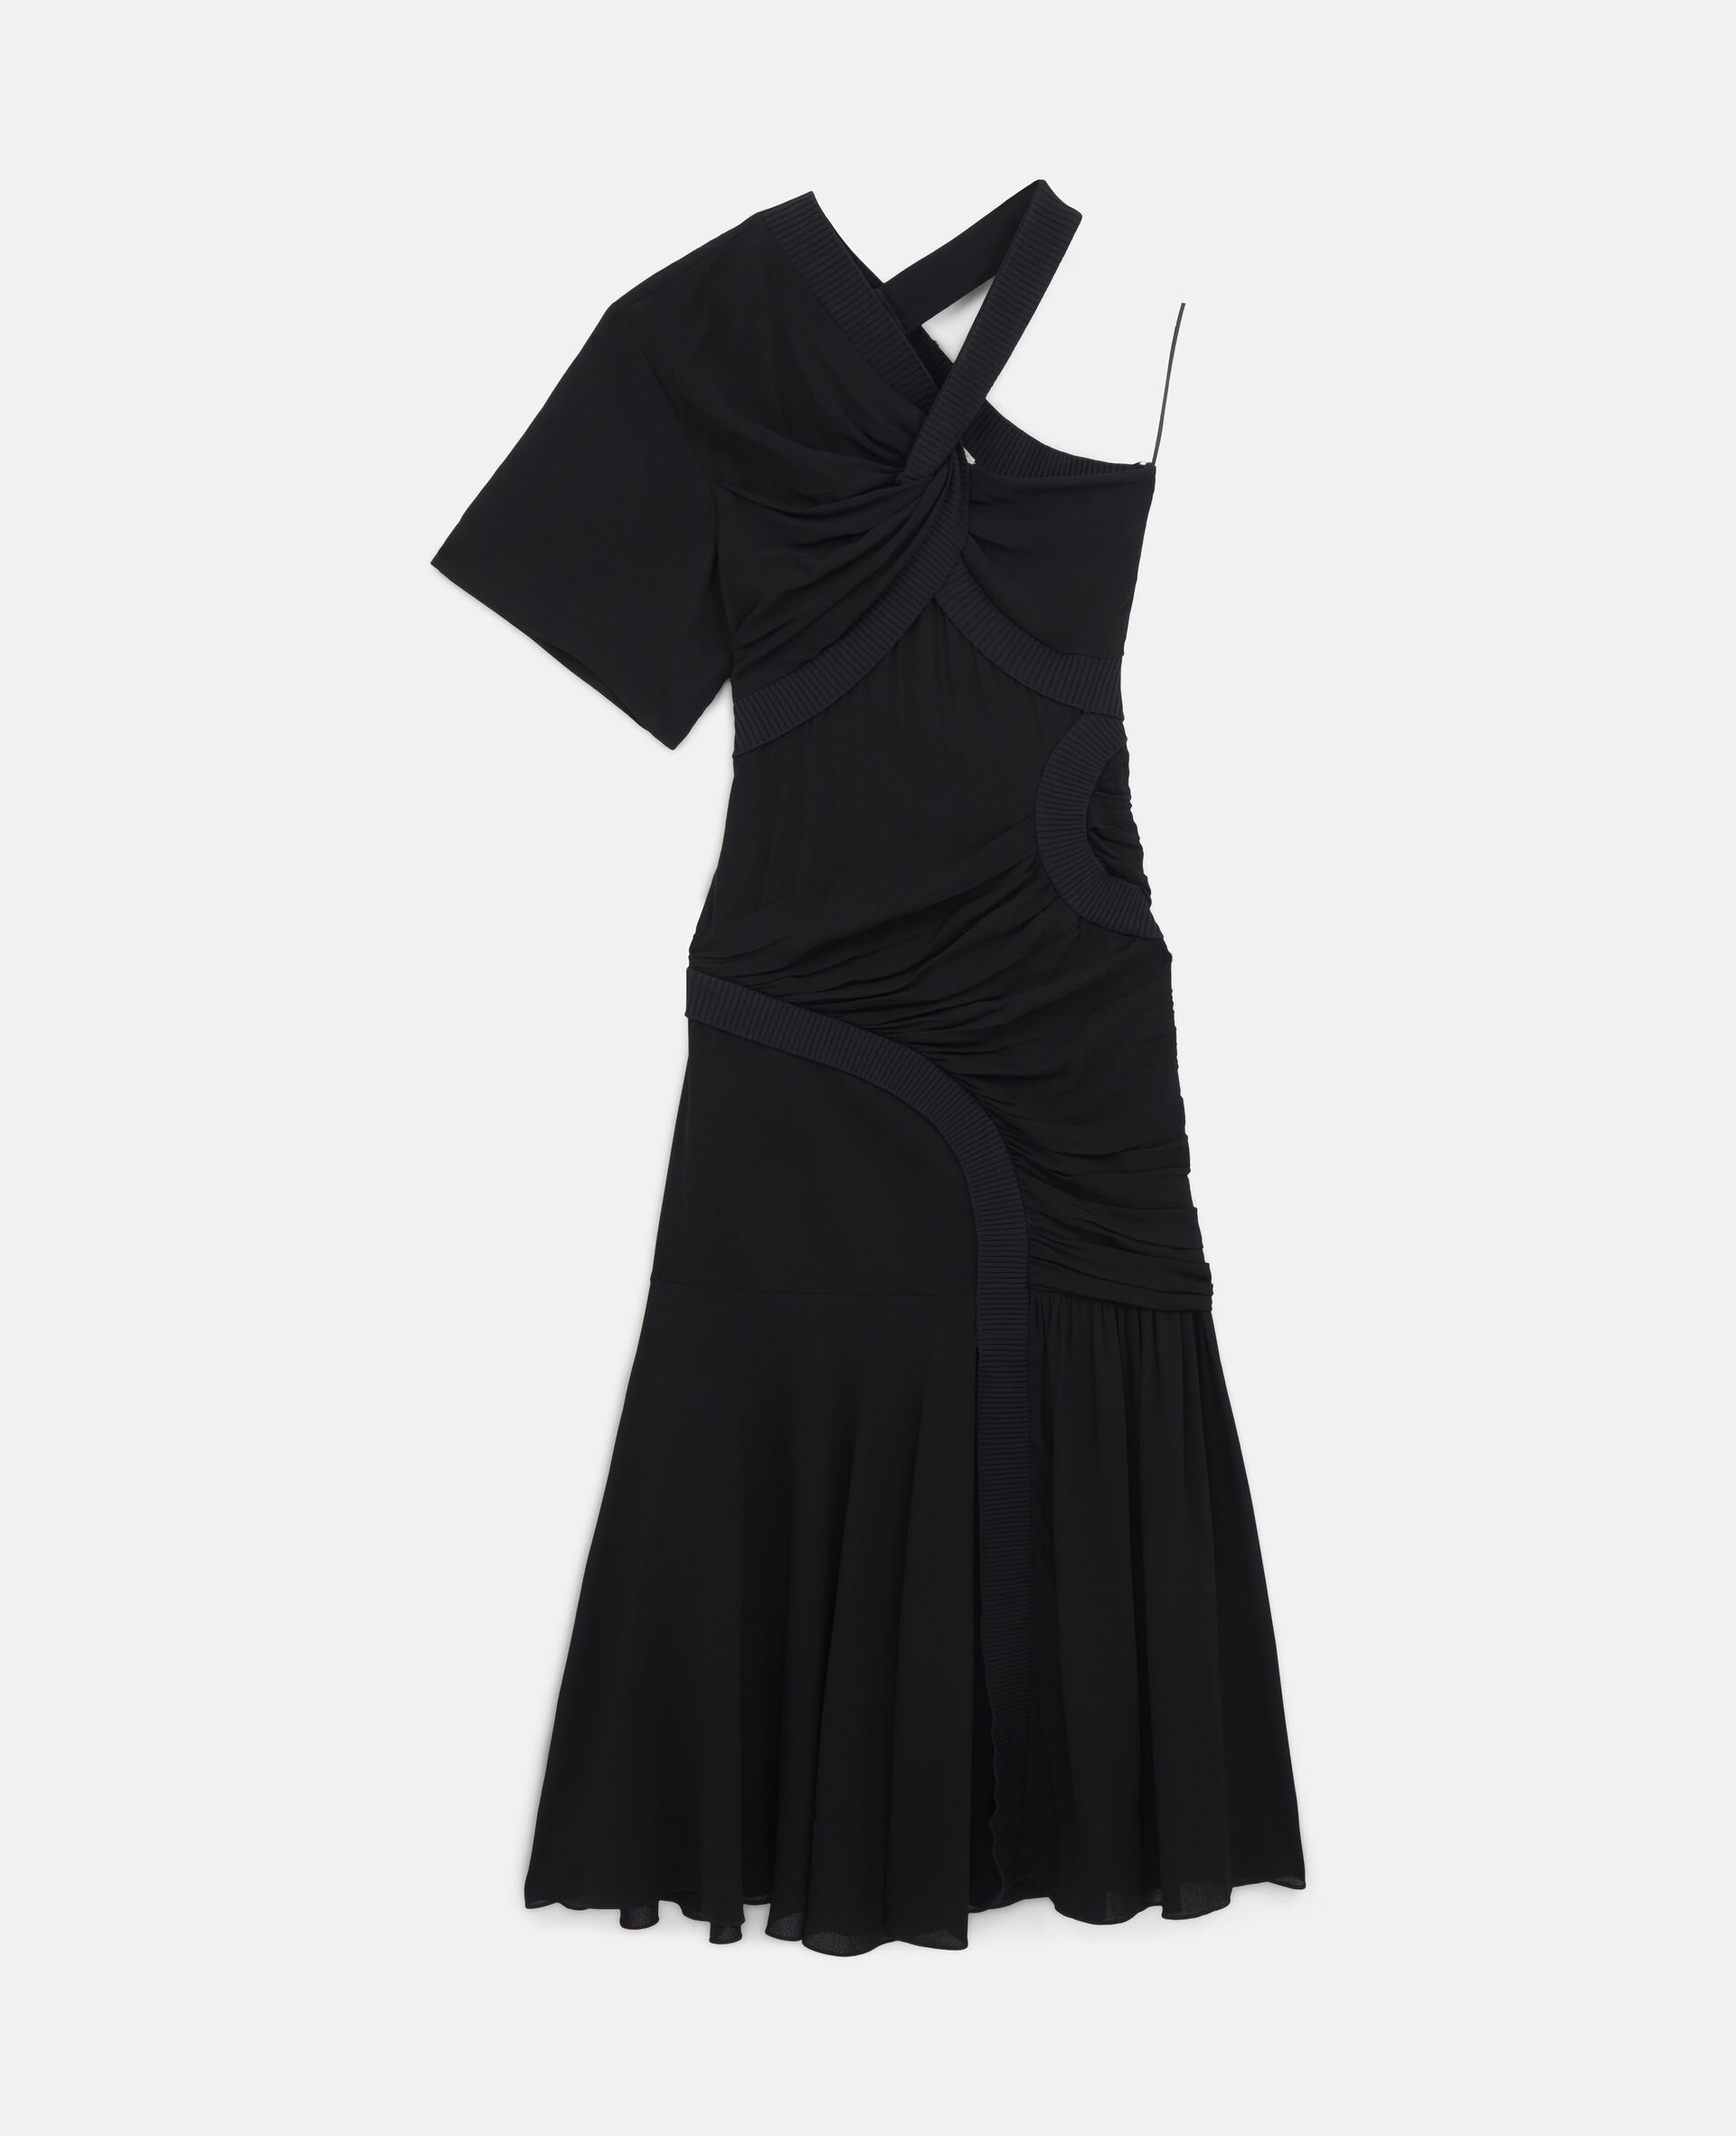 Emmeline Dress-Black-large image number 0